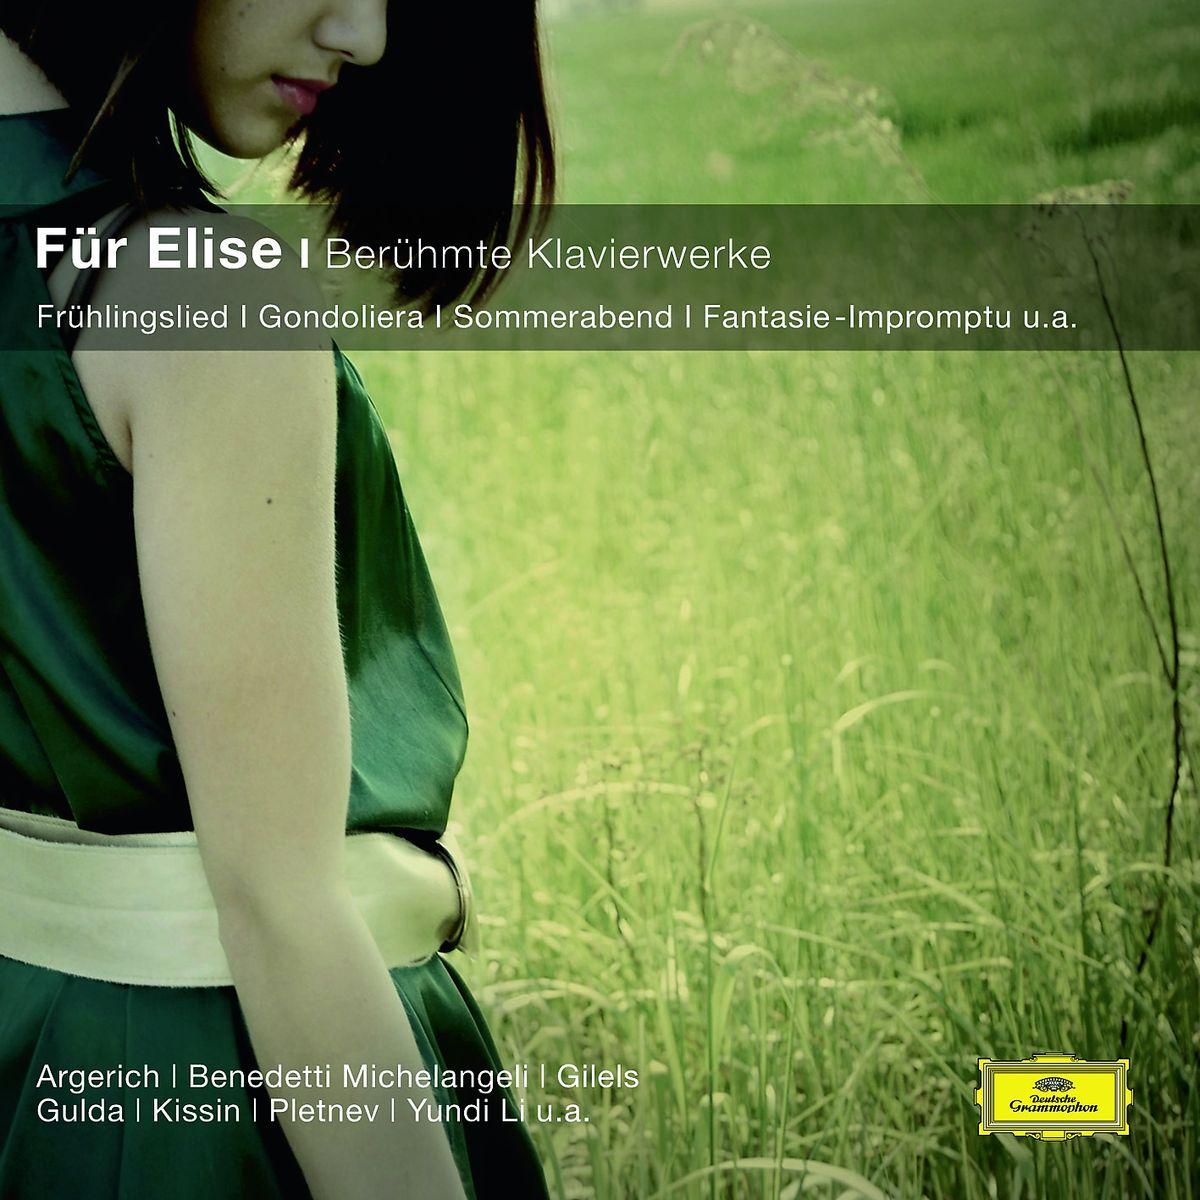 CD Fur Elise/Beruhmte klavierwerke: Fruhlingslied, Gondoliera, Sommerabend, Fantasie-Impromptu